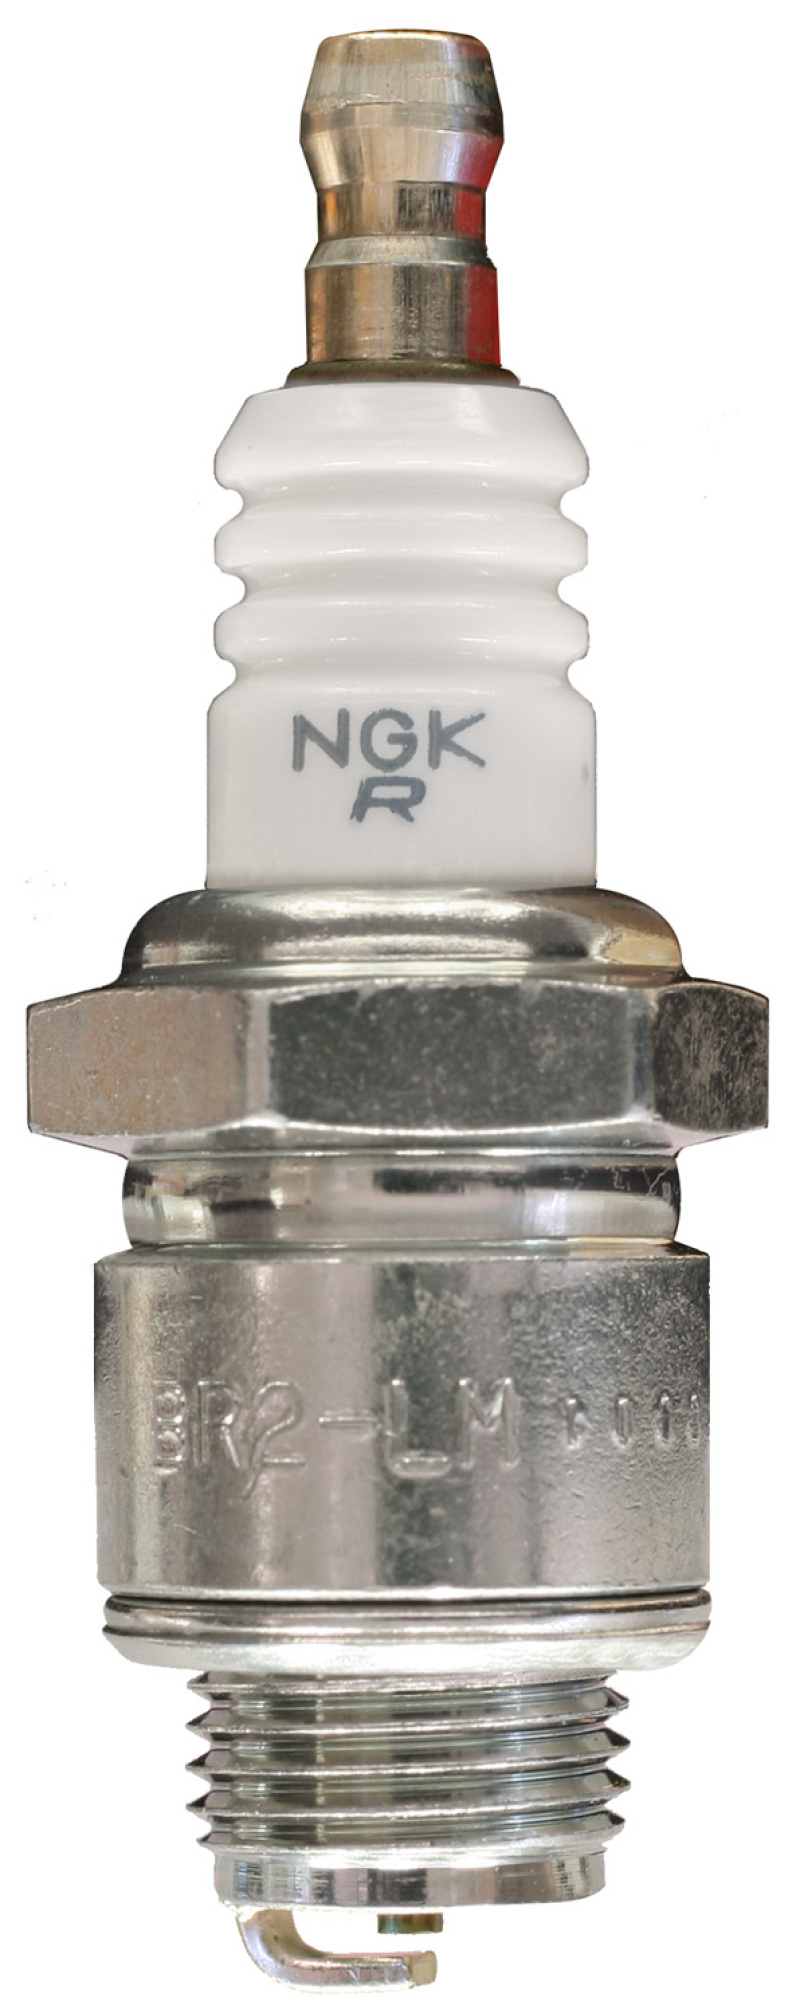 NGK BLYB Spark Plug Box of 6 (BR2-LM) - 6787